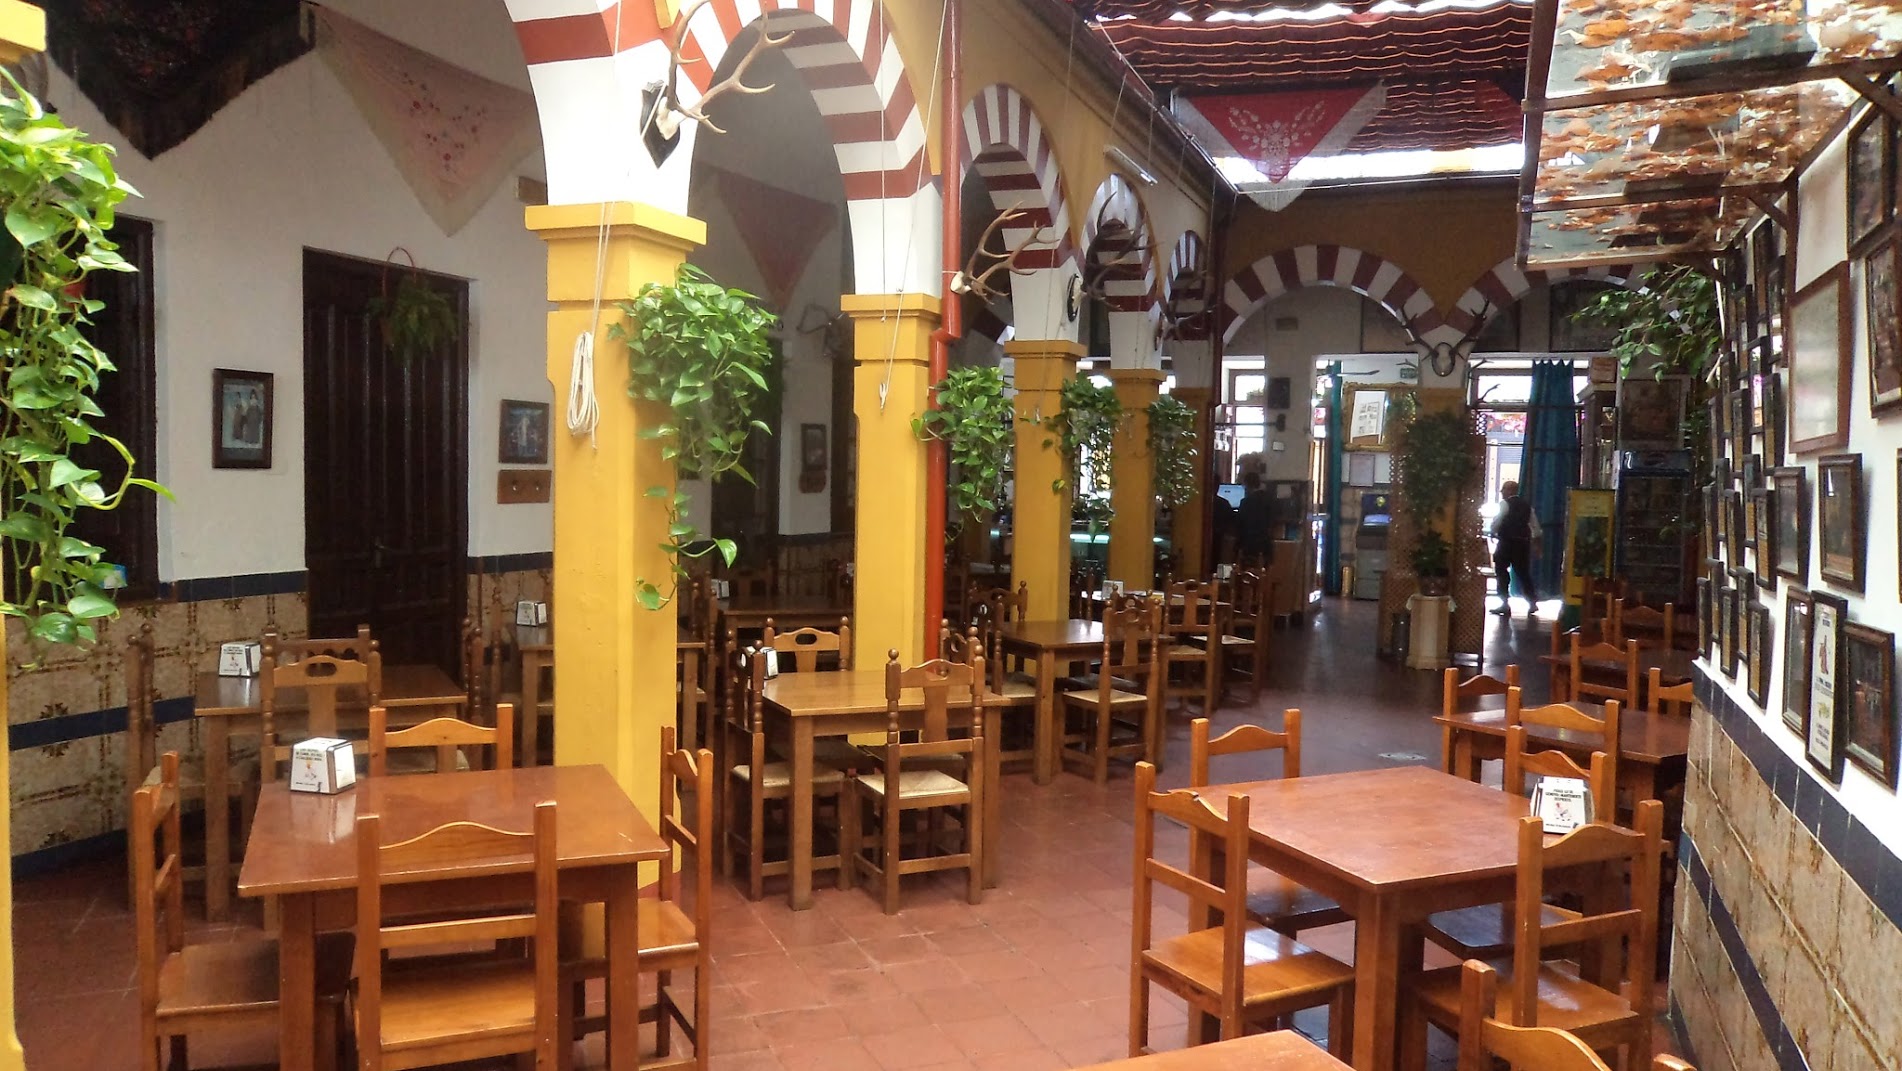 Restaurante en Córdoba Sociedad Plateros María Auxiliadora. Detalle Patio central